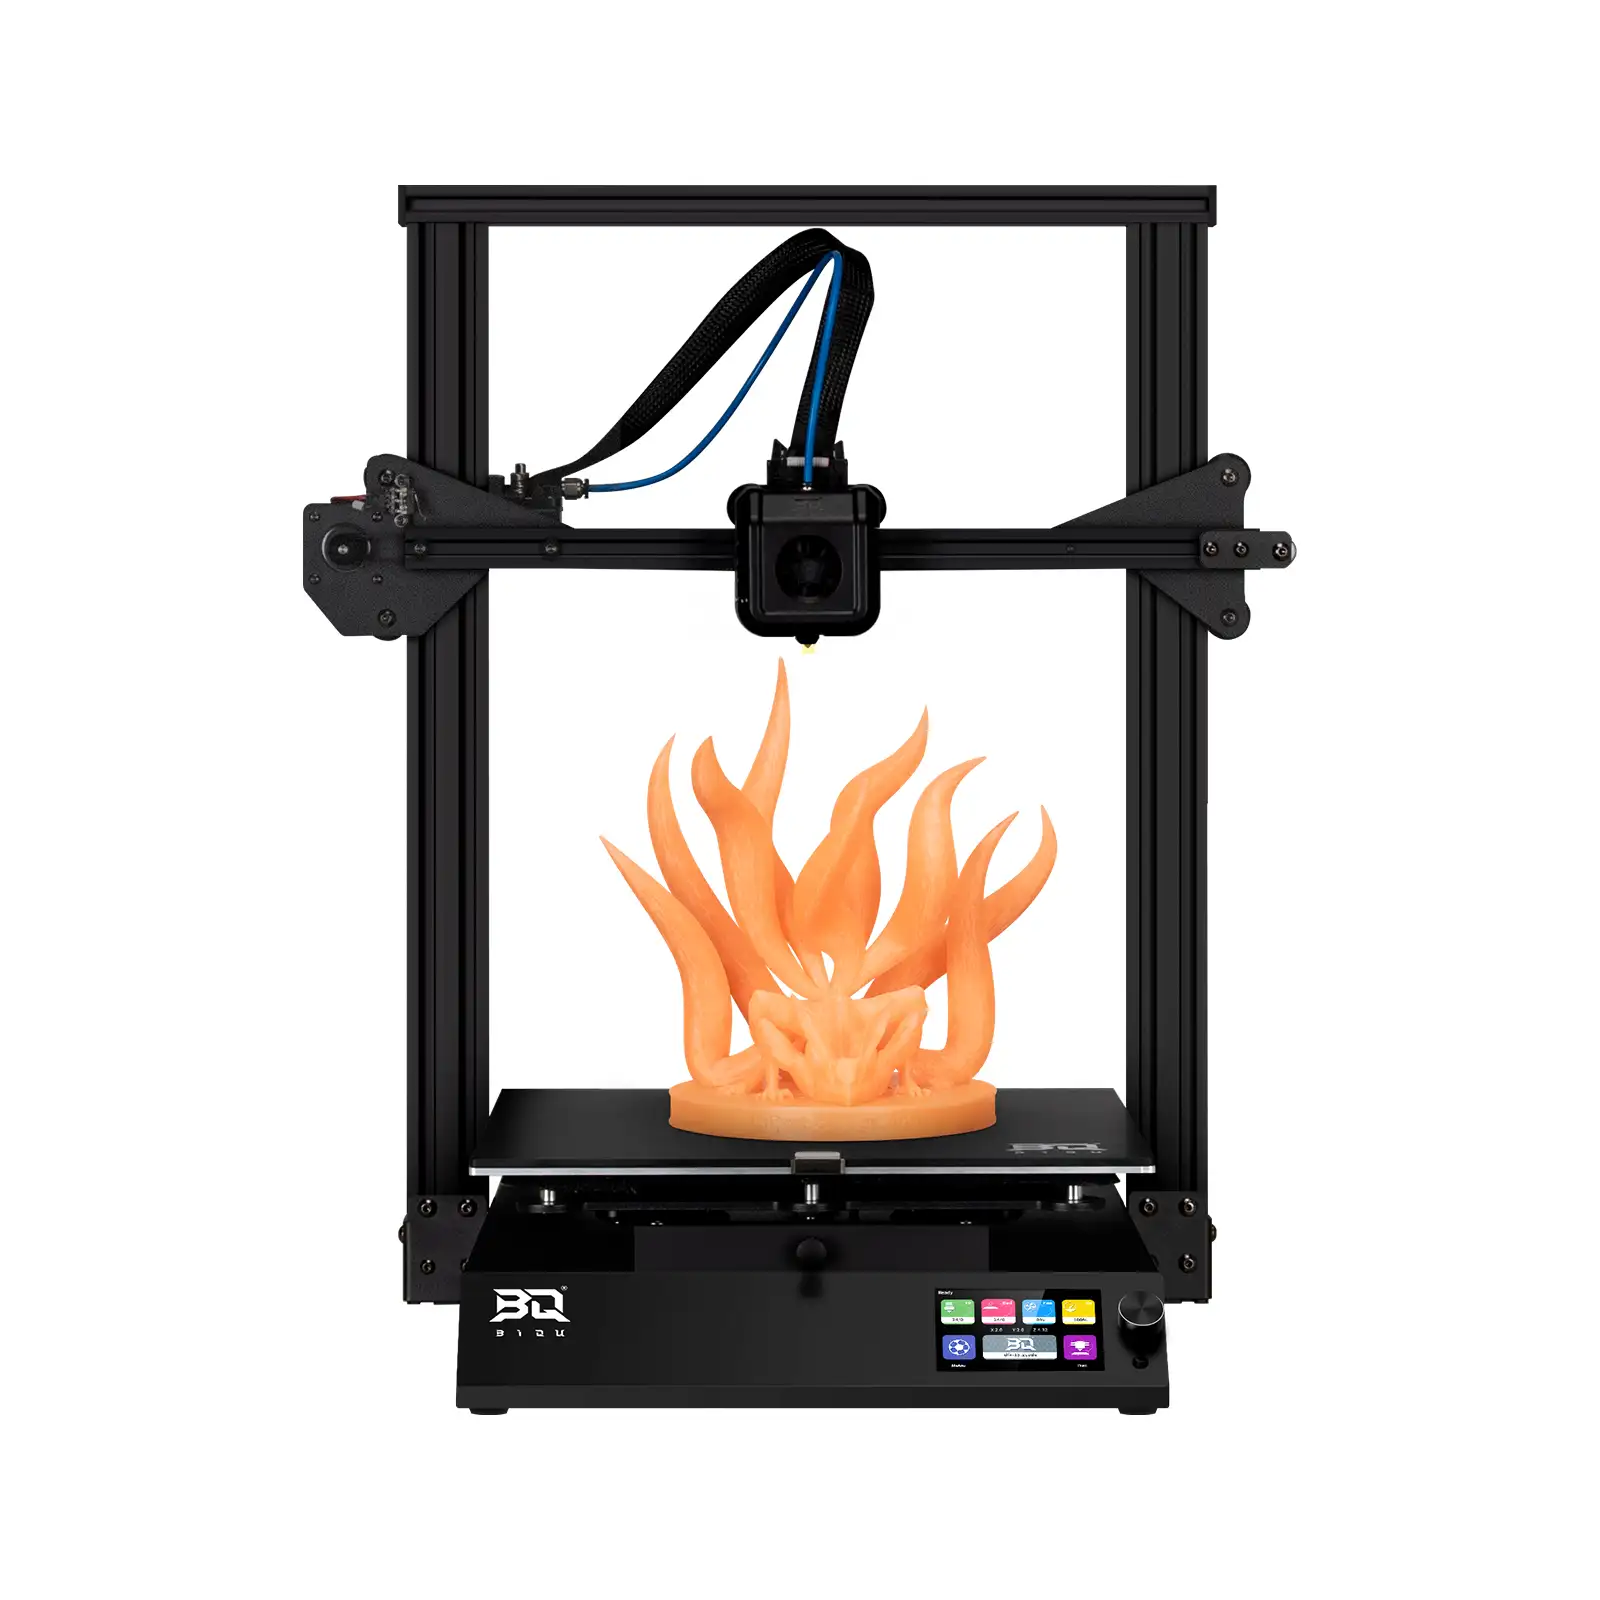 큰 인쇄 크기 310*310*340mm 저렴한 가격 비용 3d 프린터 Diy Impresora 3d 인쇄 기계 Crealit